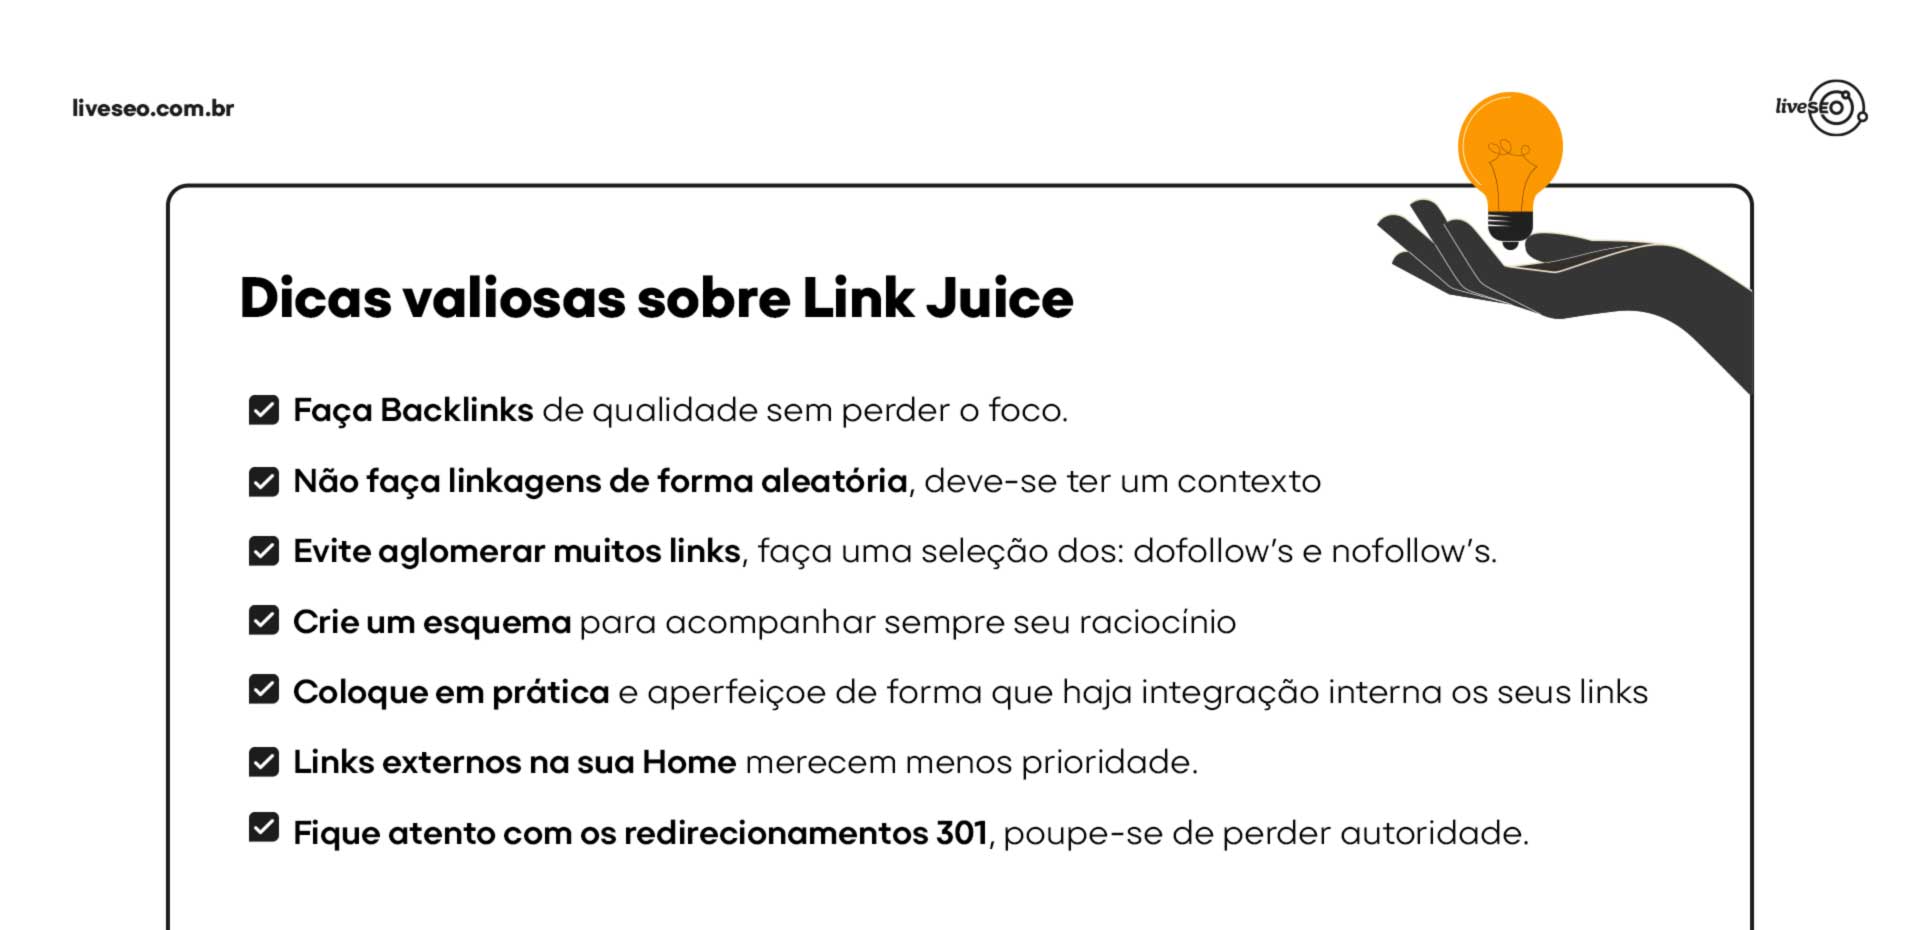 Quadro em formato de checklist com ações para Link Juice.